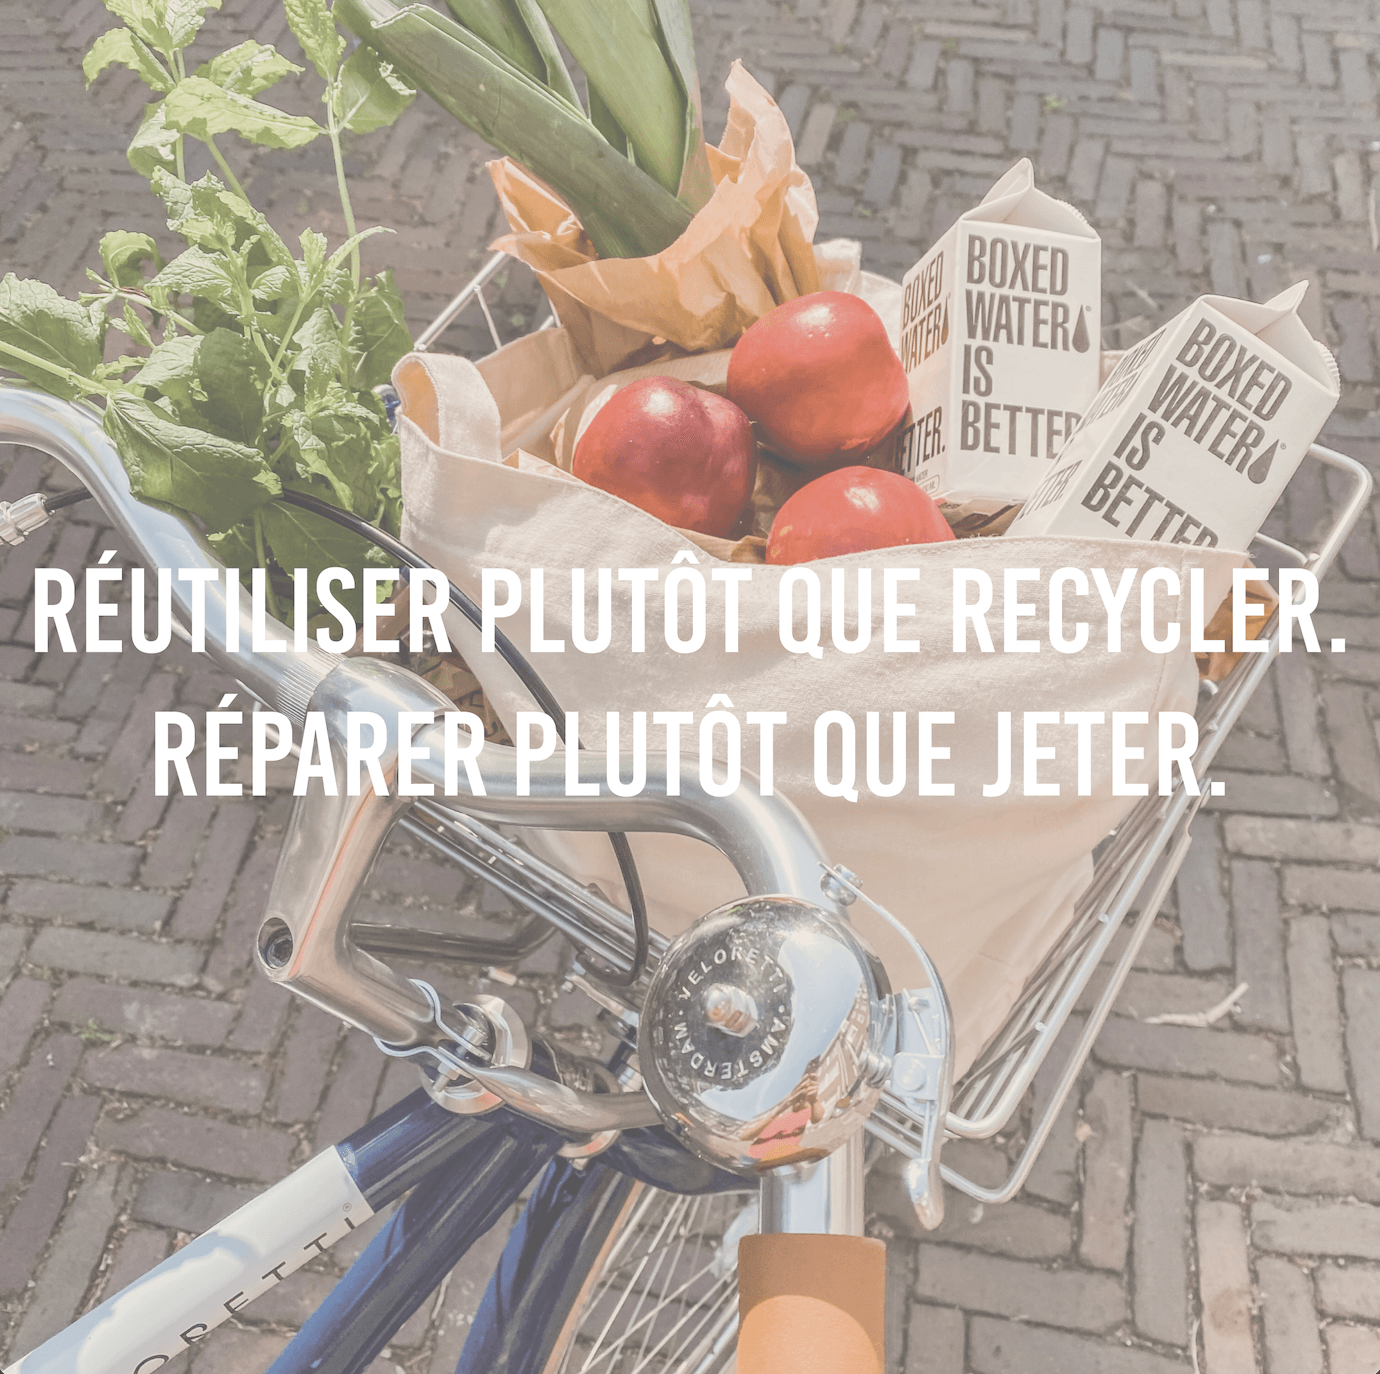 Réutiliser plutôt que recycler. Réparer plutôt que jeter.